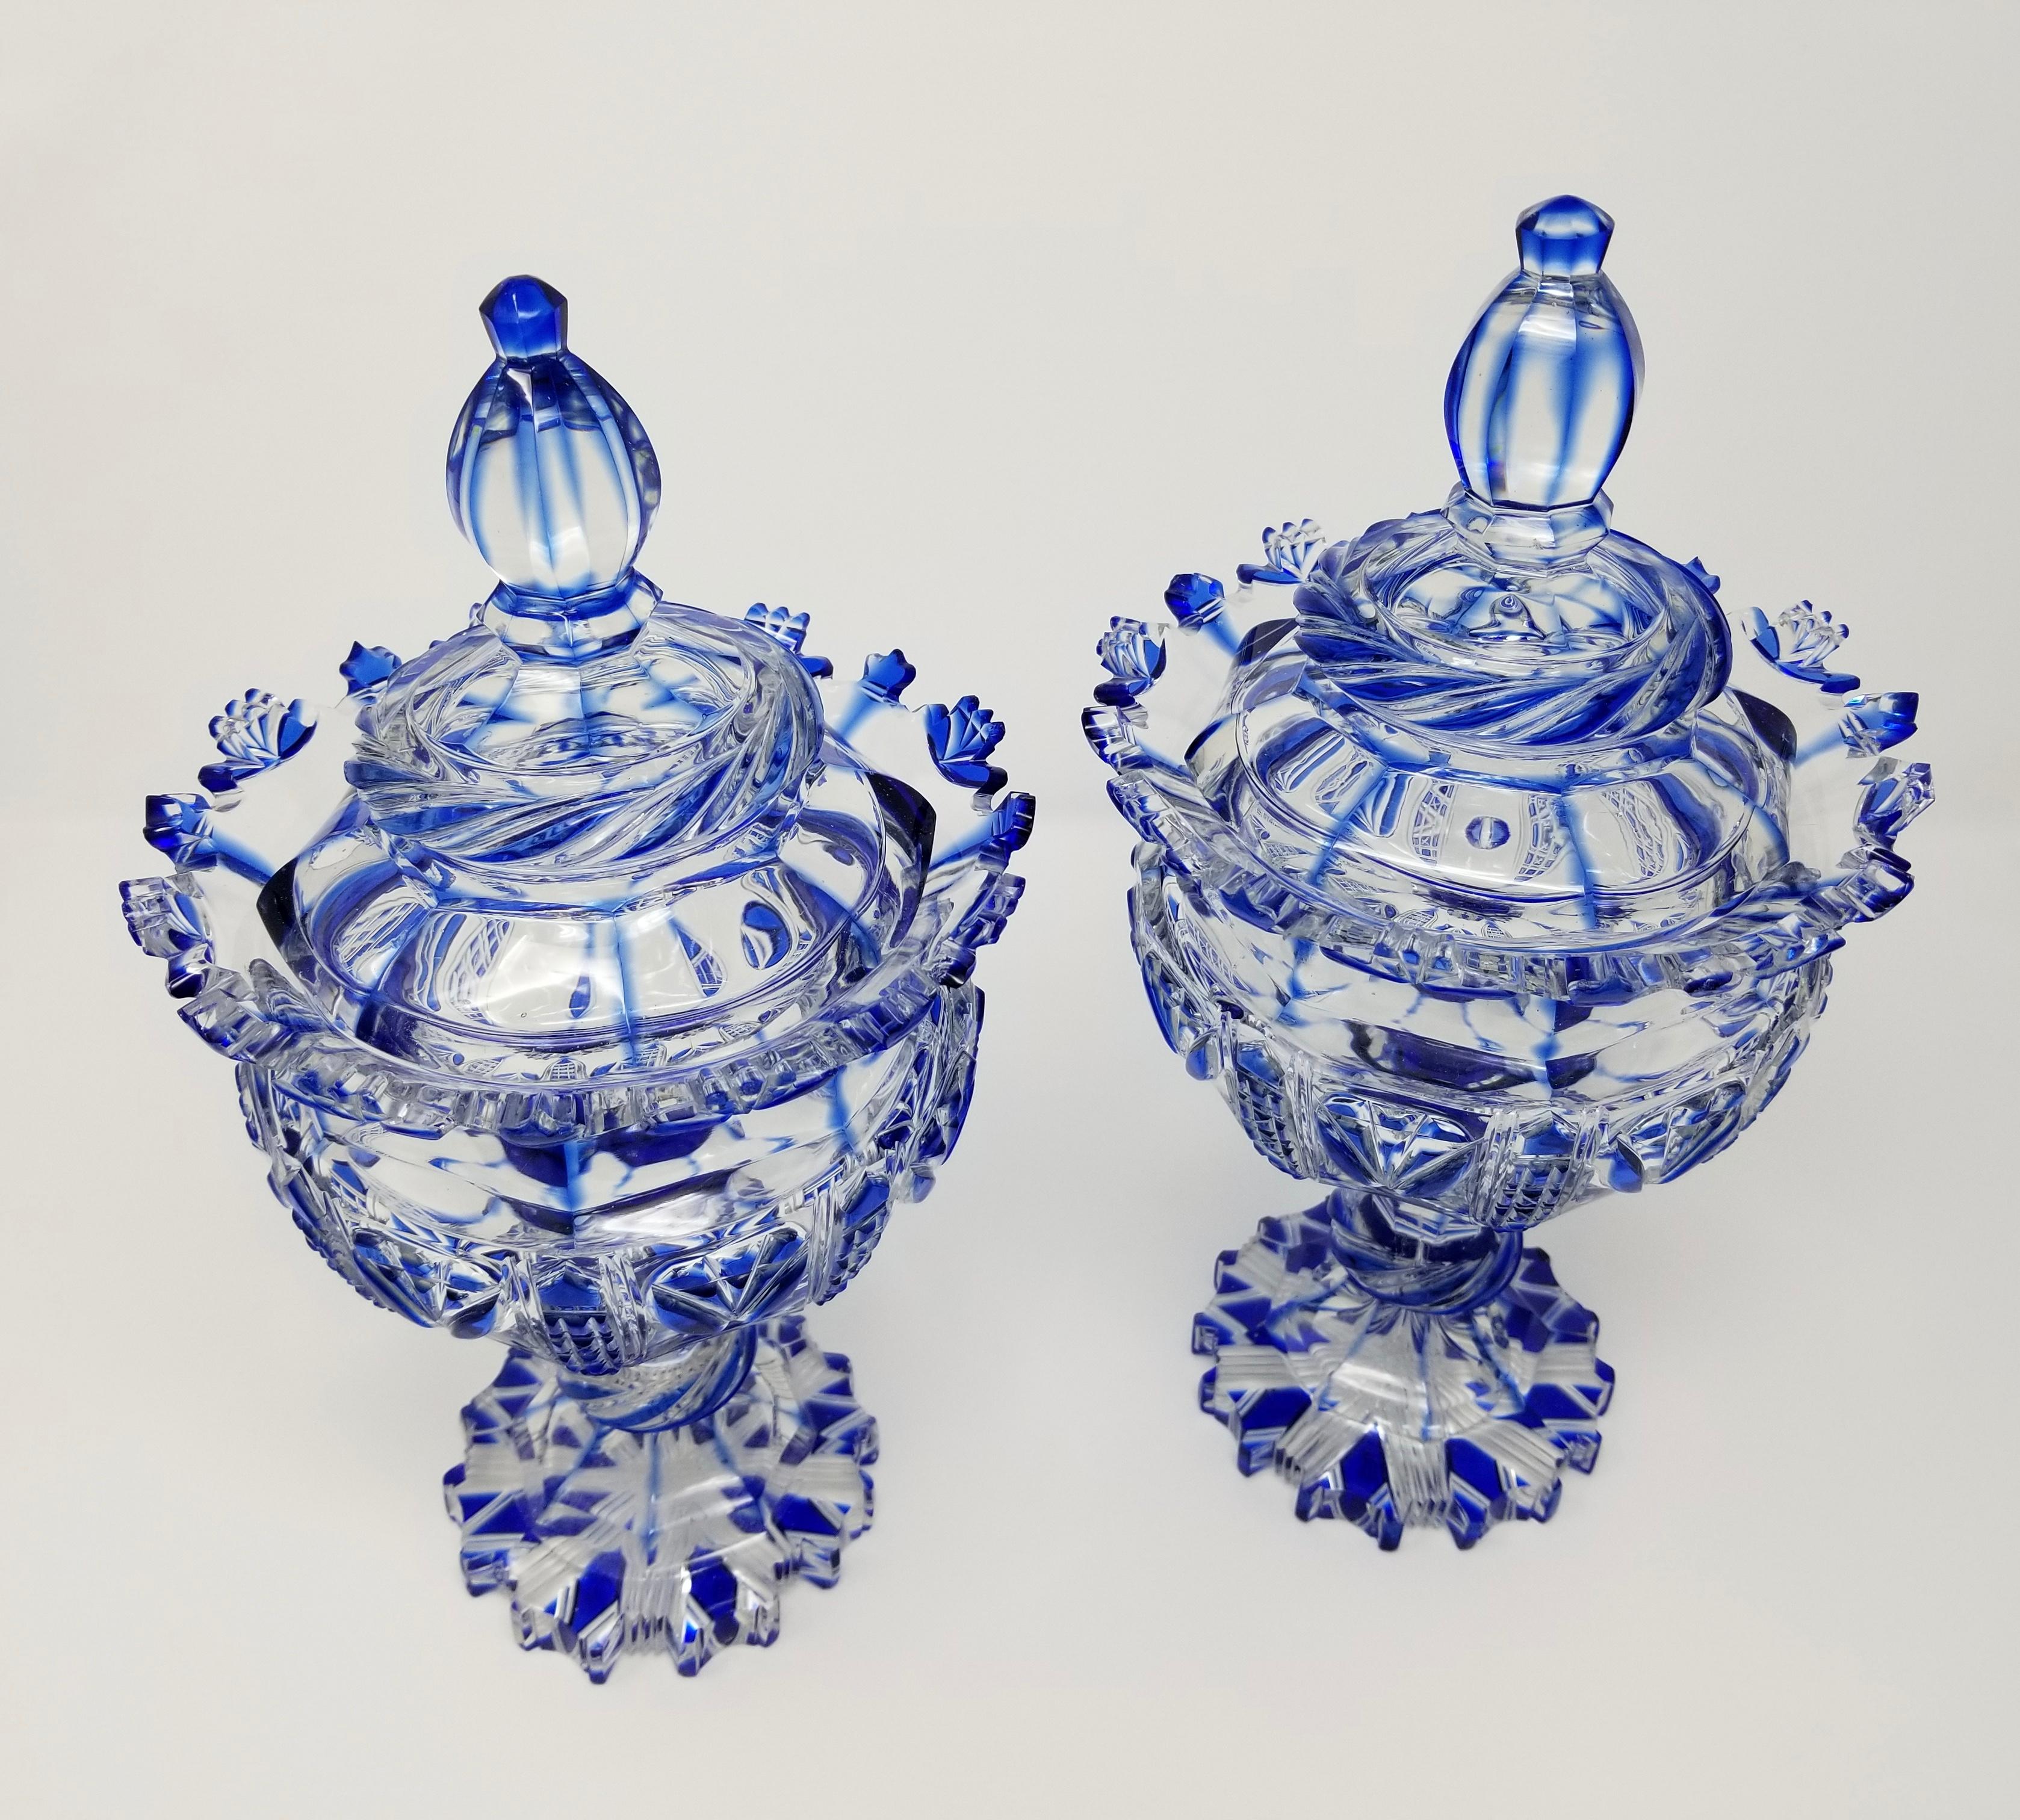 Belle paire d'urnes/vases de style Louis XVI du 19e siècle, en cristal russe bleu cobalt taillé à la main et recouvert de cristal clair, attribuée à la manufacture de verre impériale russe. Chaque urne est magnifiquement taillée à la main avec deux